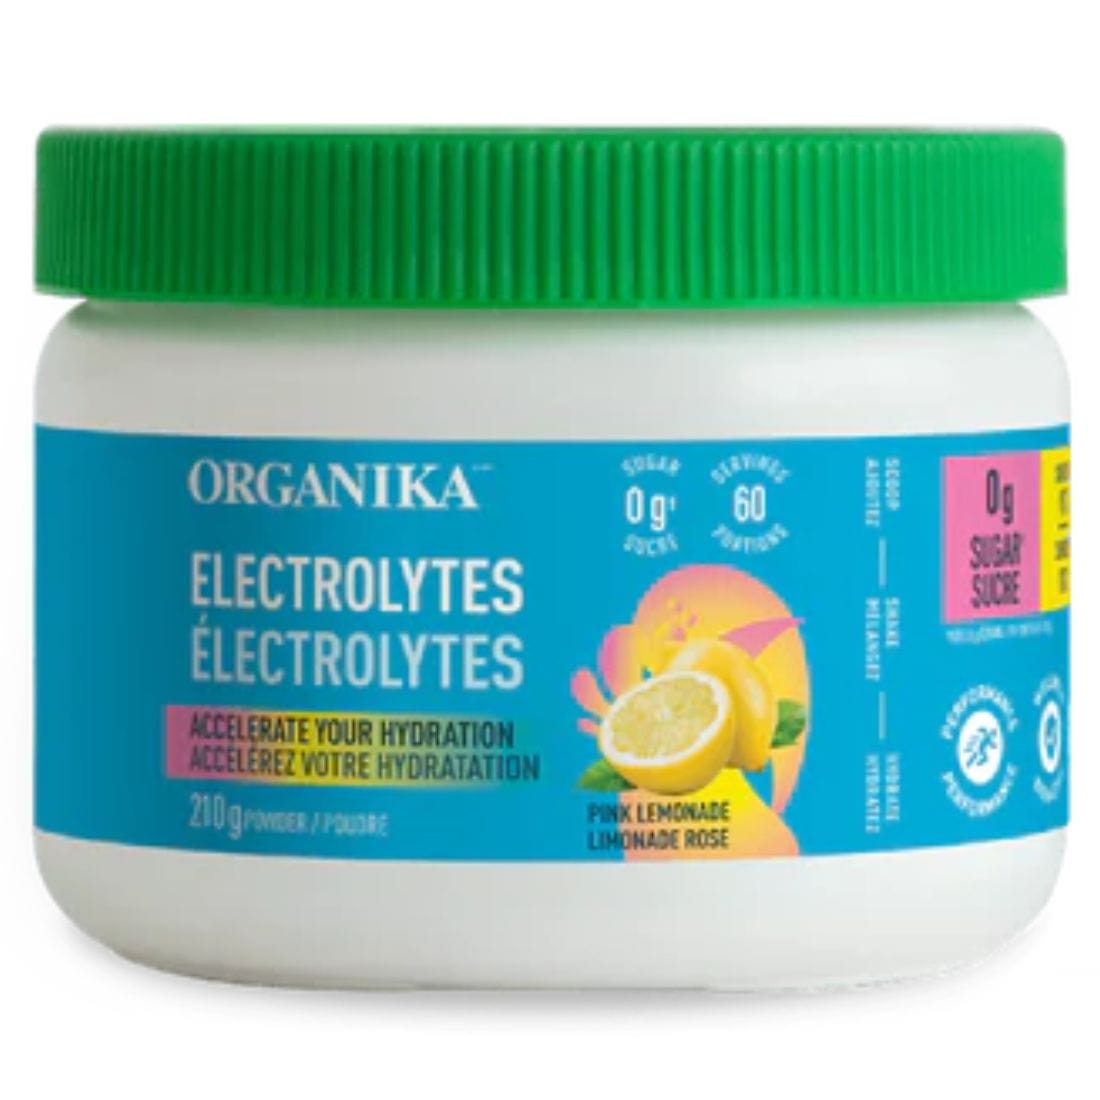 organika-electrolytes-pink-lemonade-210g